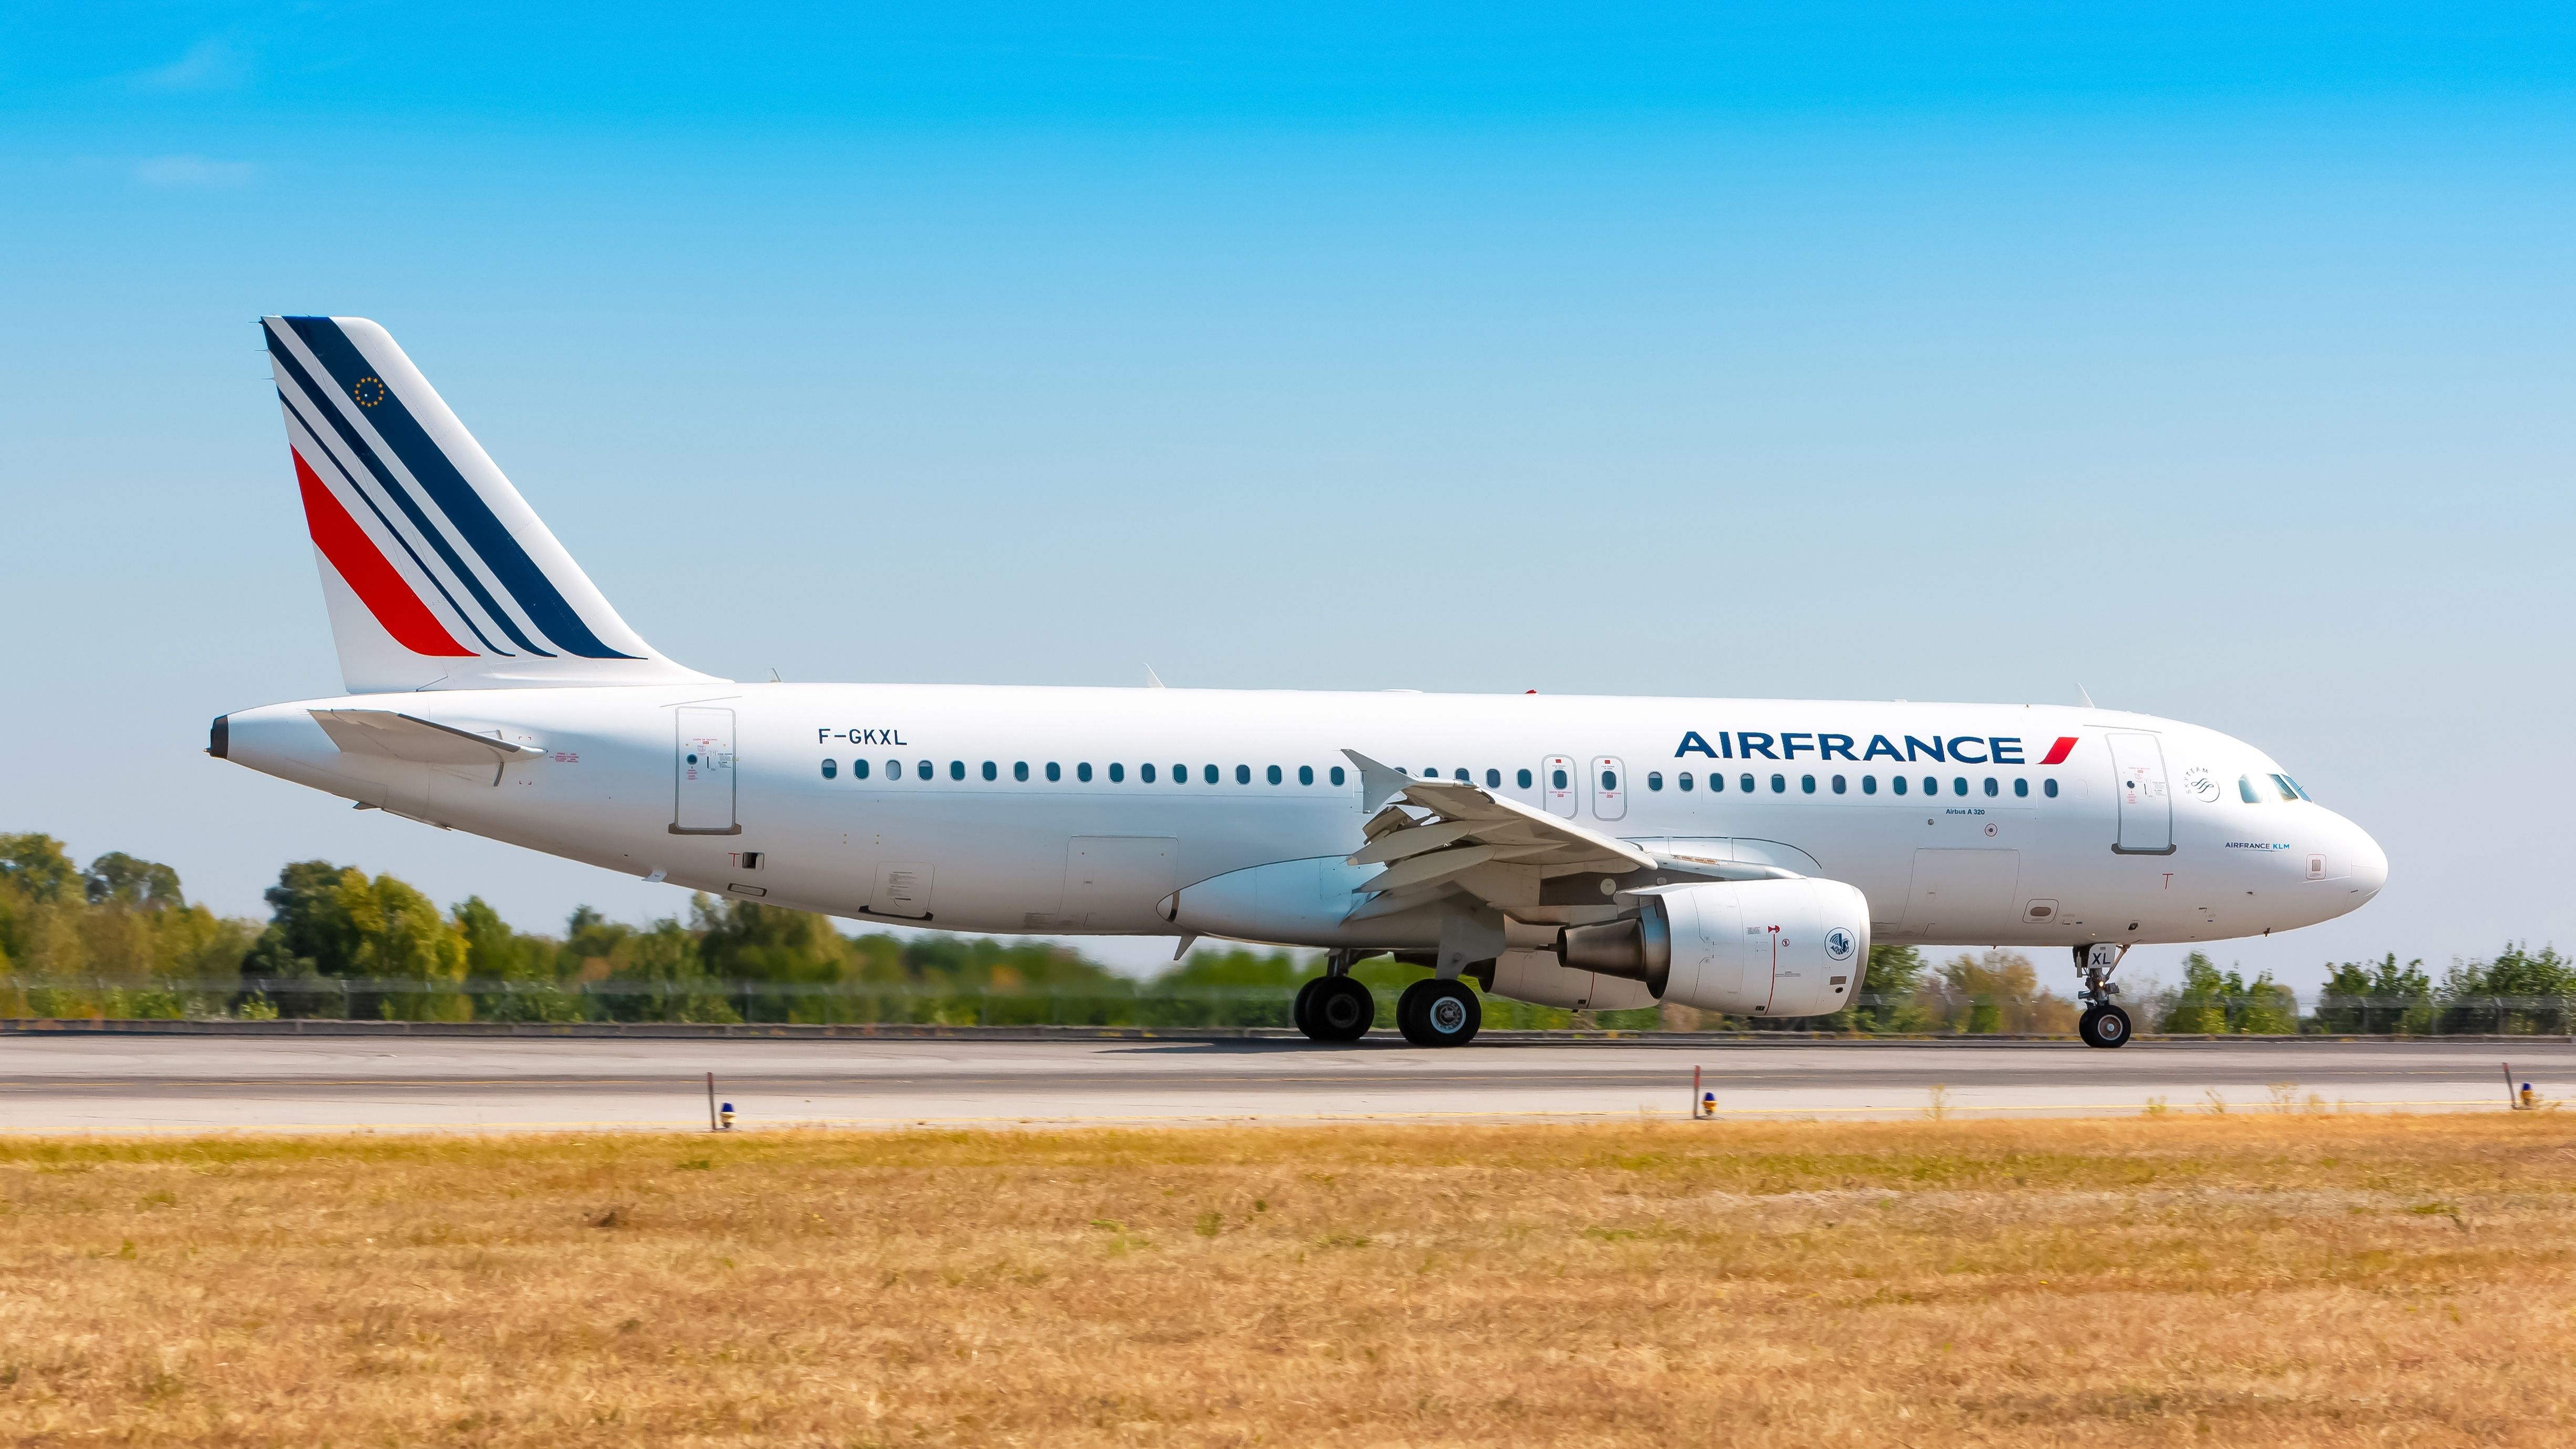 An Air France Airbus A320 